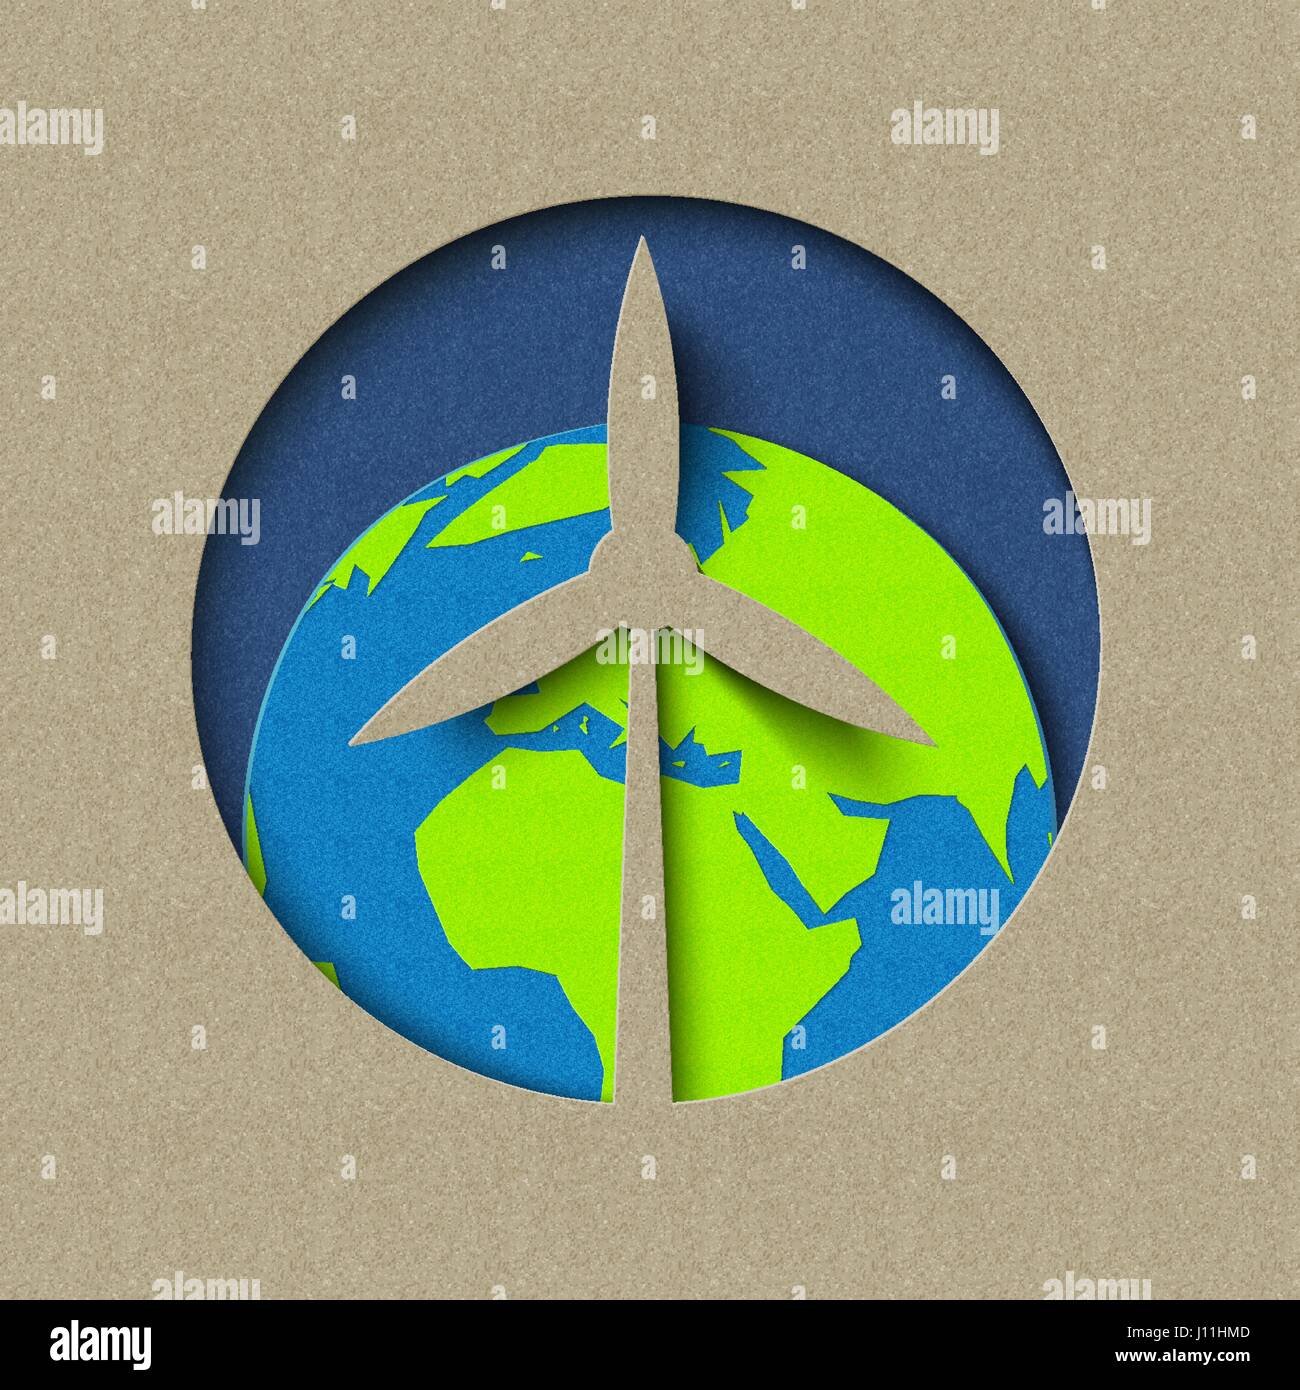 Le jour de la terre papier coupé concept pour l'énergie éolienne verte et la conservation. Illustration de soins mondiale de l'environnement. Vecteur EPS10. Illustration de Vecteur